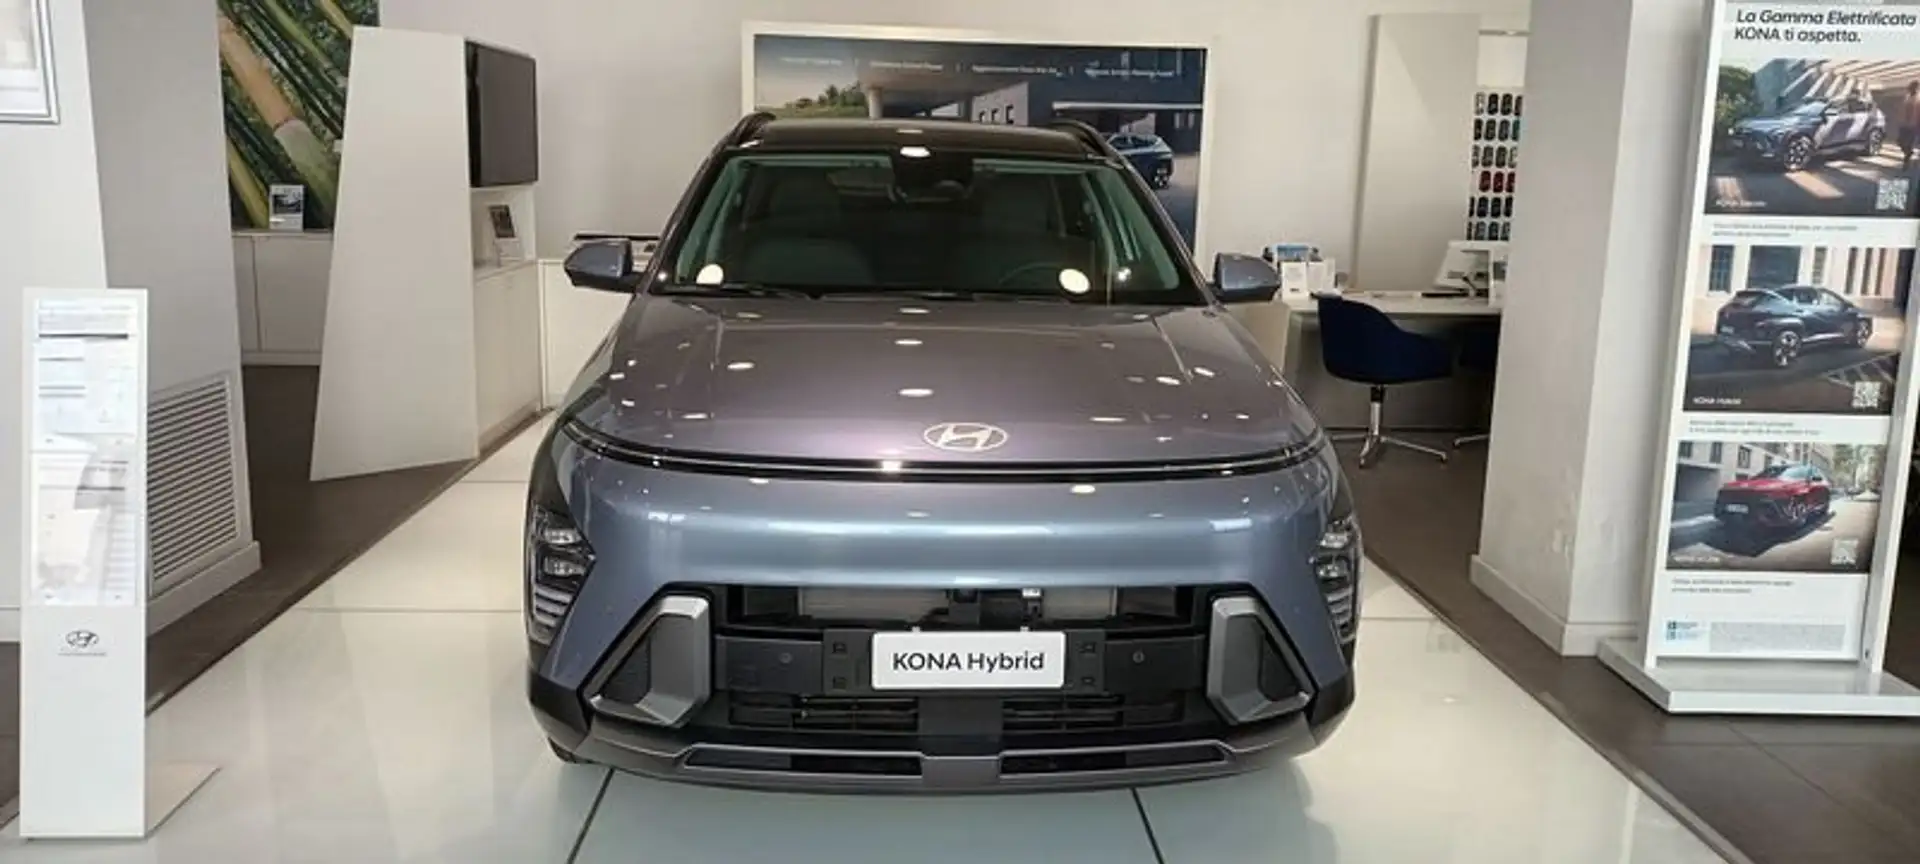 Hyundai KONA 1.0 T-GDI Hybrid 48V iMT Xline - 2